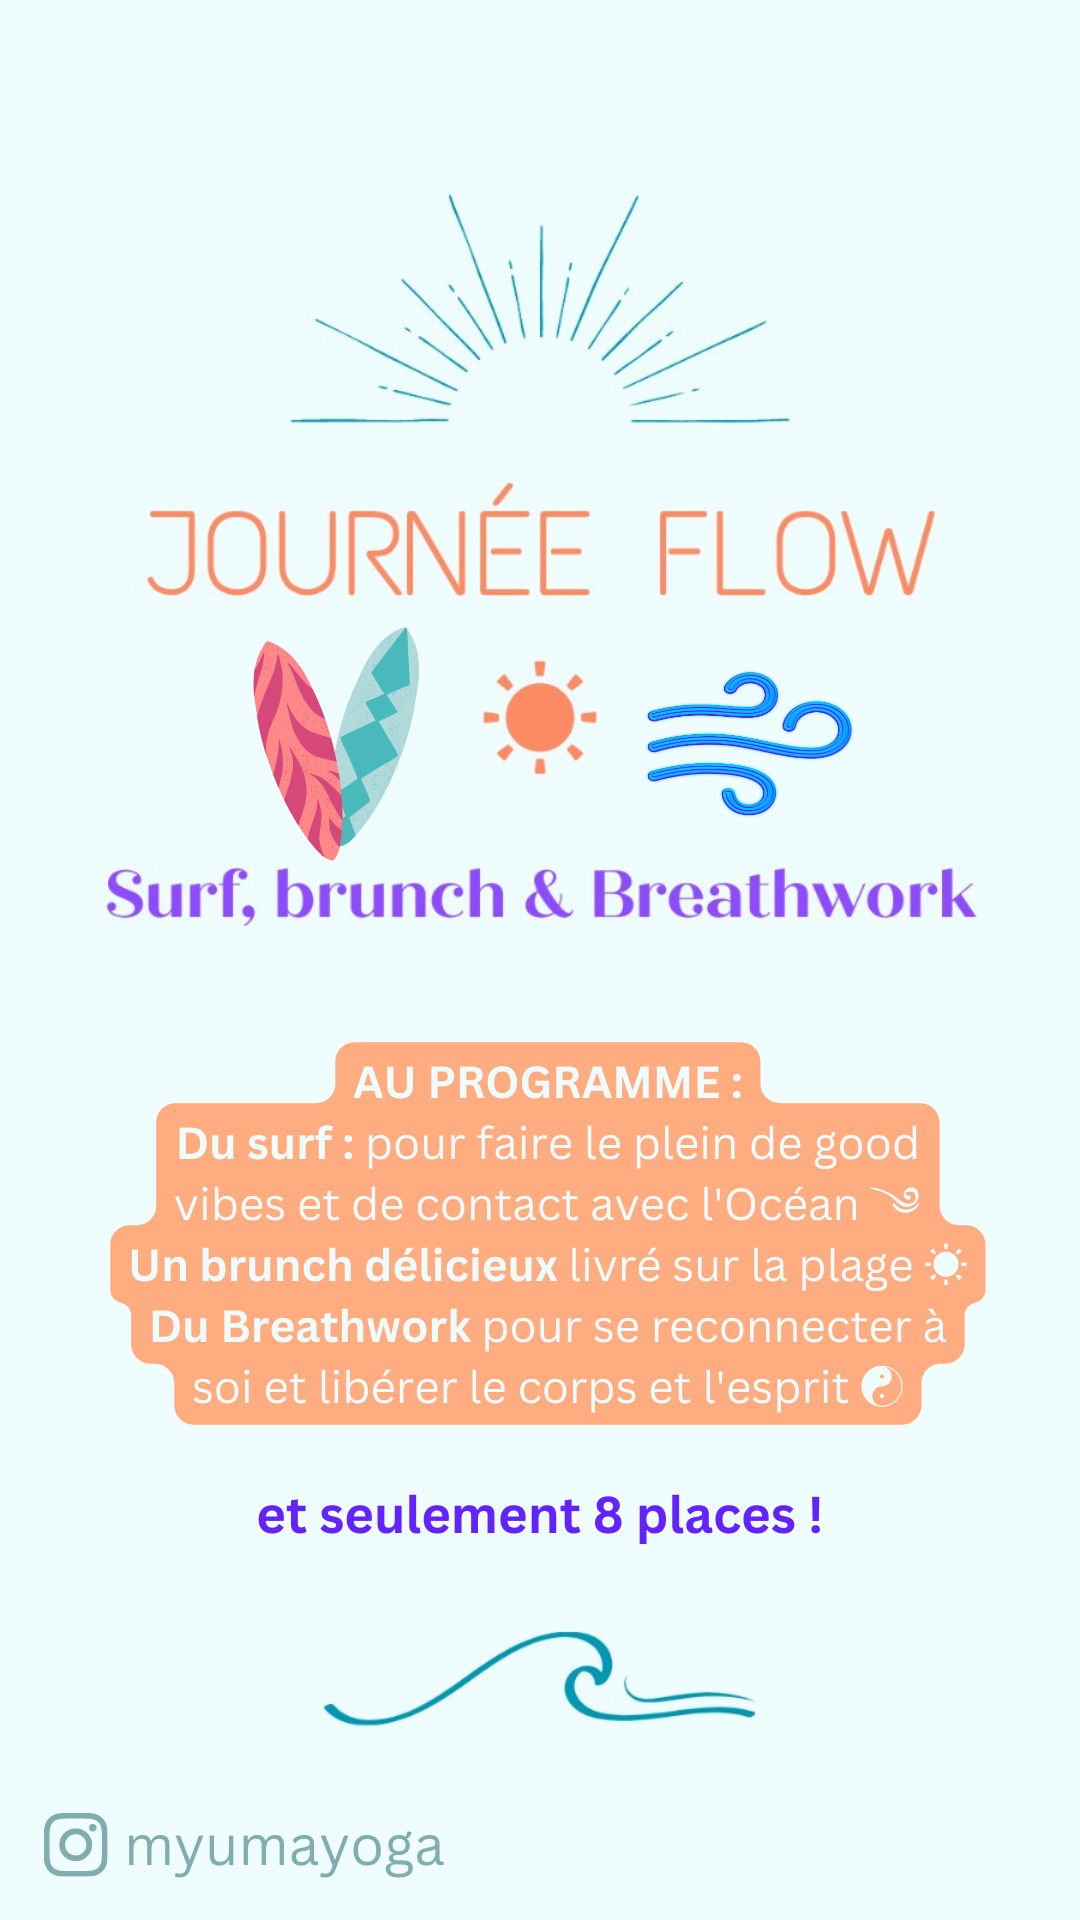 ☀︎ Journée FLOW : surf, brunch & breathwork ☀︎